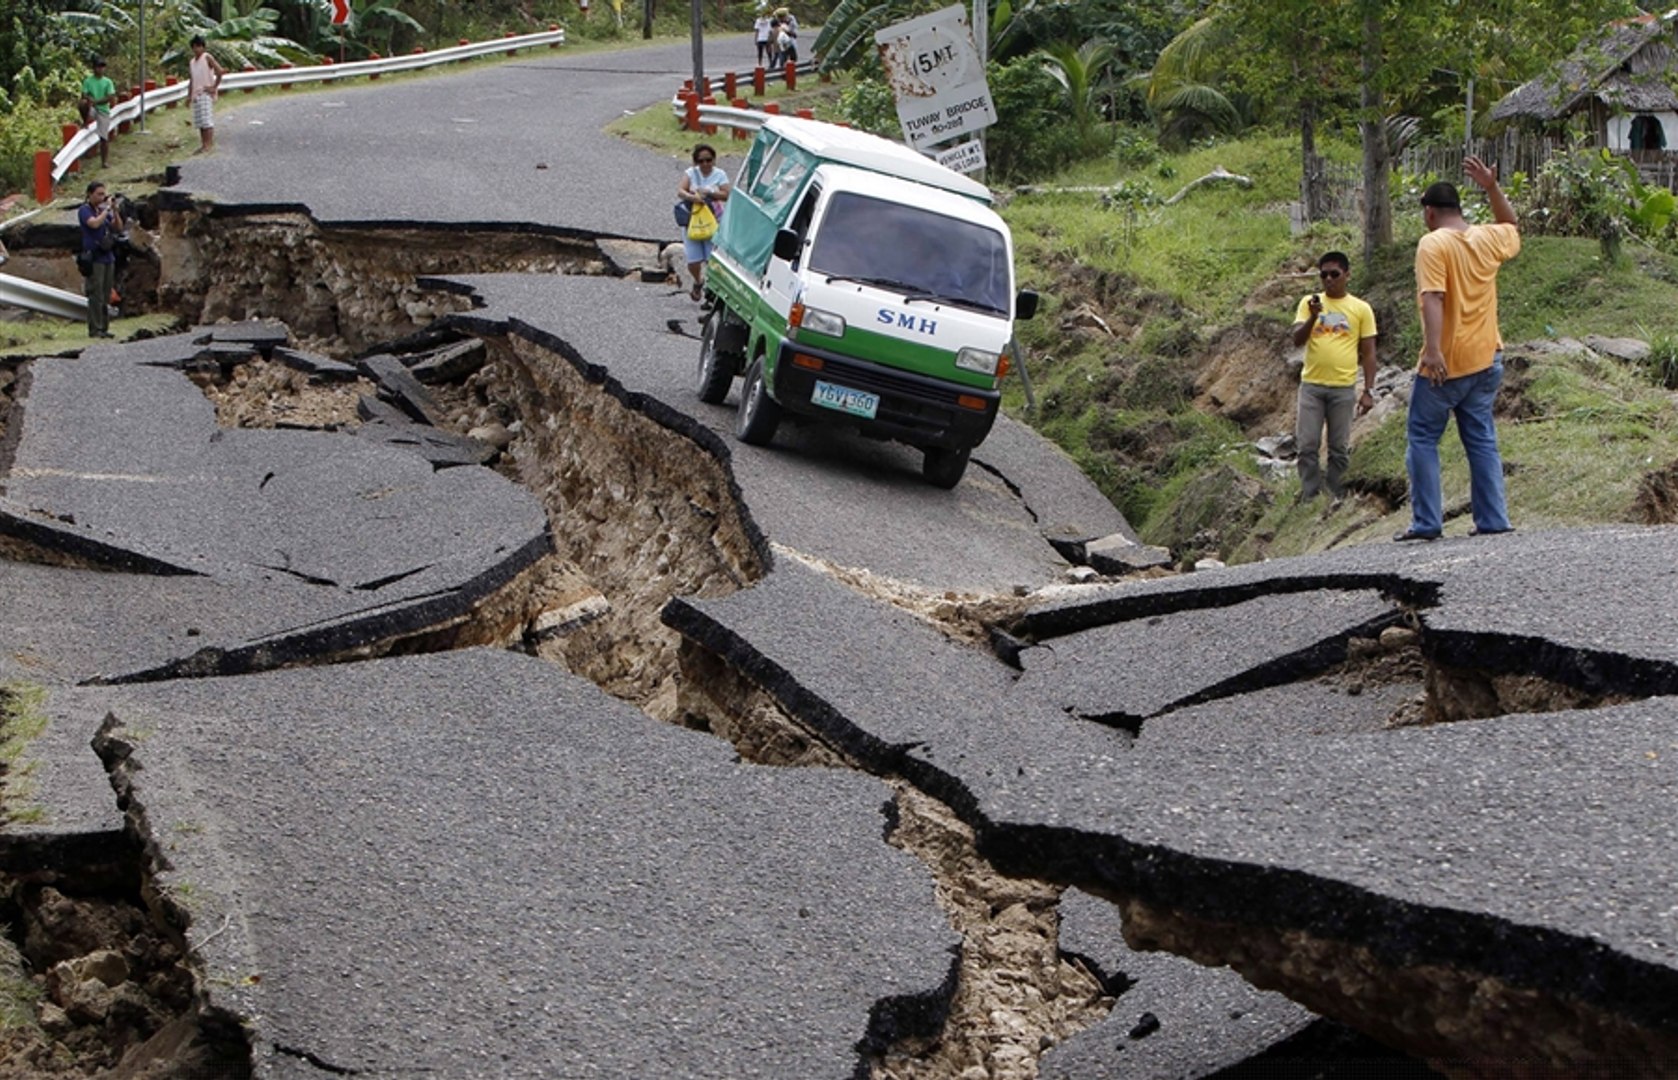 Землетрясение случаи. Землетрясение в Непале 2015. Землетрясение фото. Природные катаклизмы. Разлом дороги.